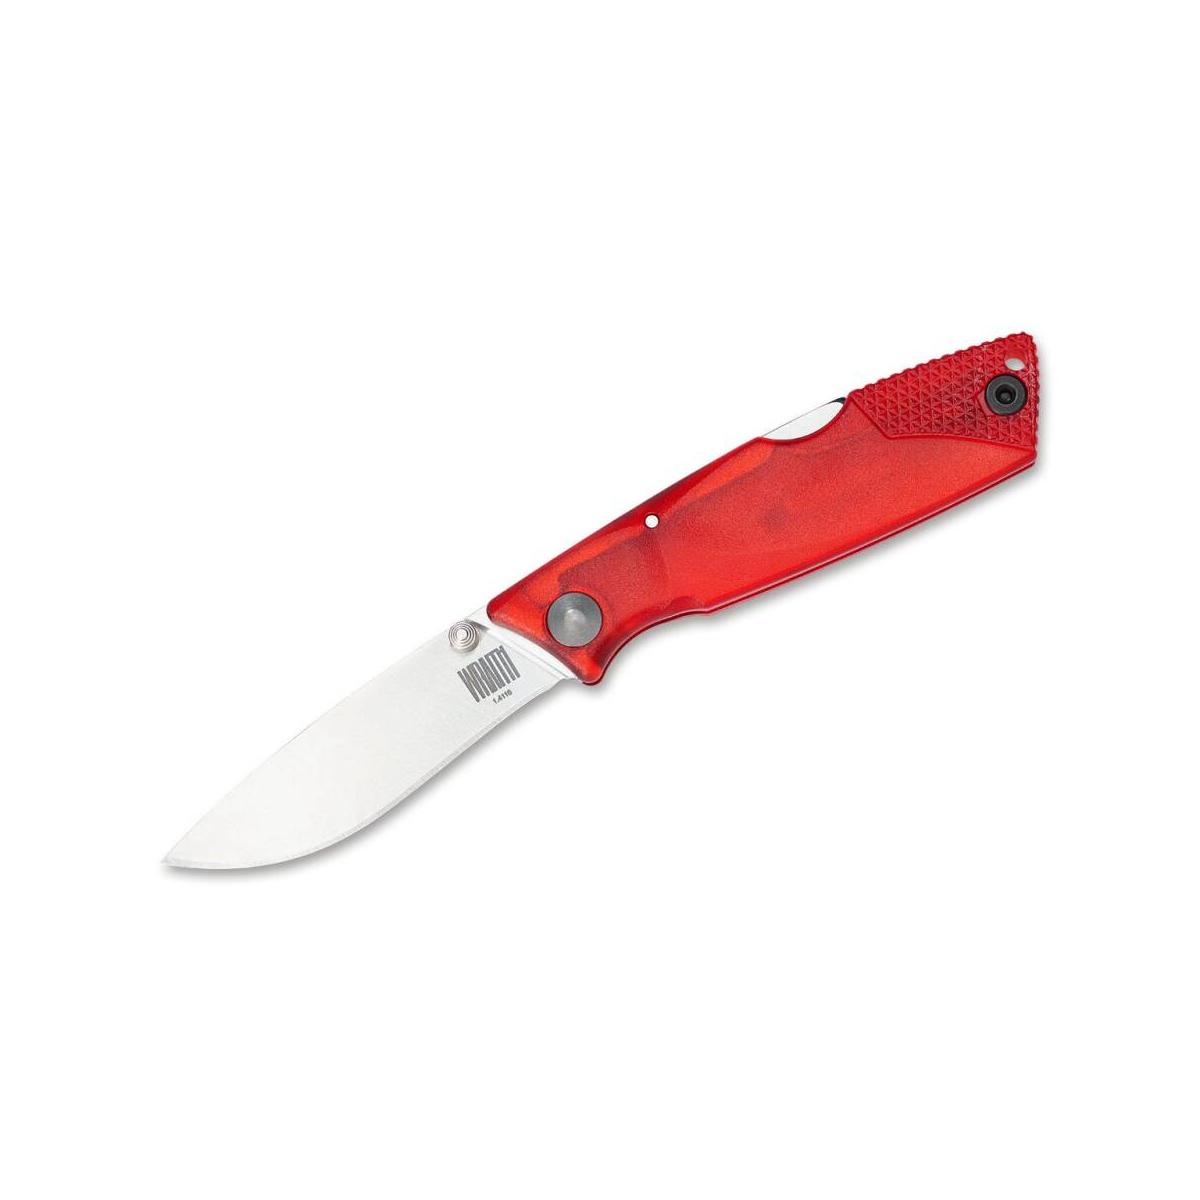 Ontario nóż składany Wraith czerwony.